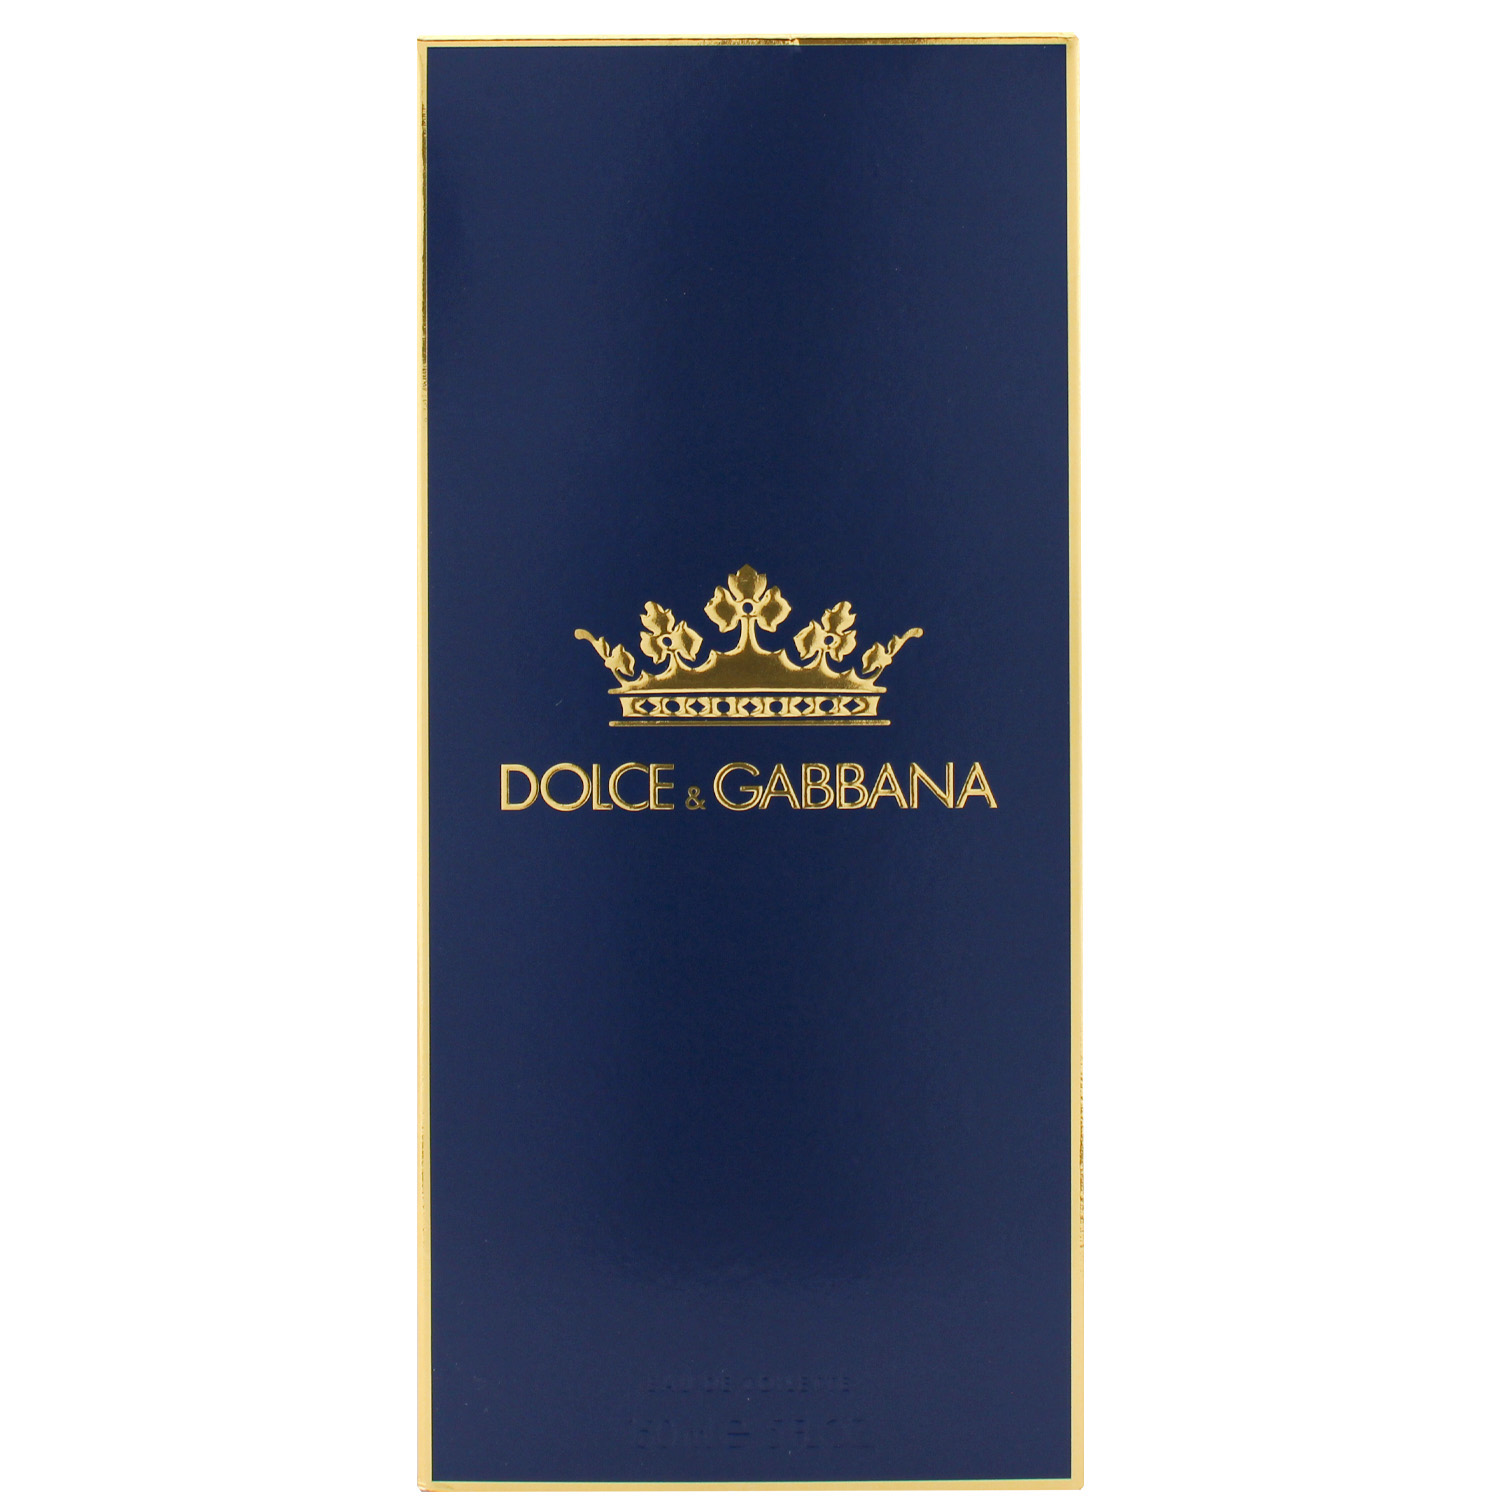 Dolce & Gabbana K by Dolce & Gabbana Eau de Toilette 100ml